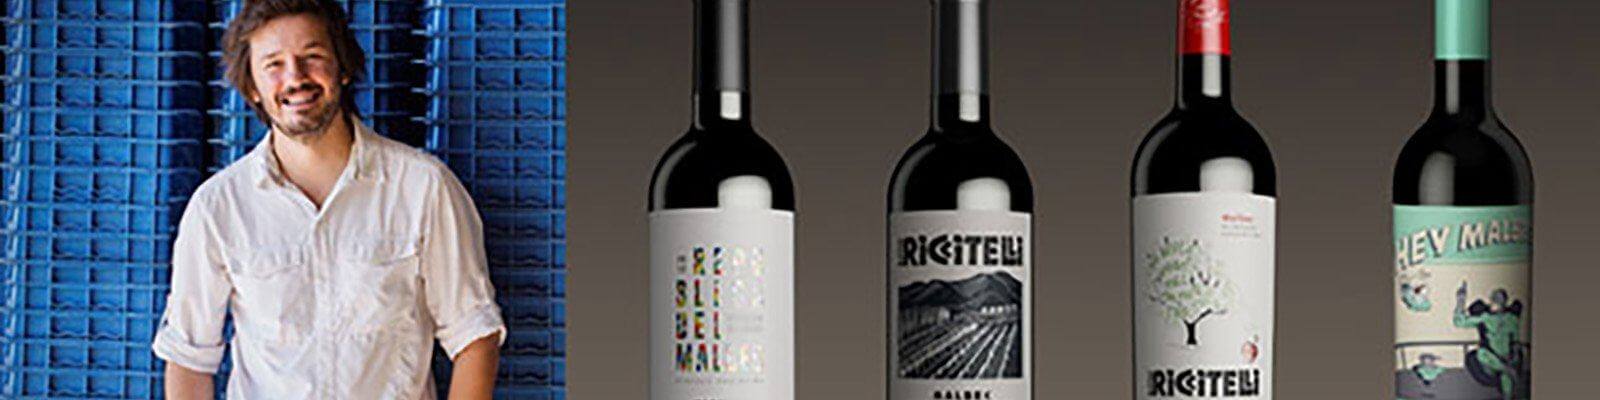 Onze collectie Matias Riccitelli wijnen - Vind deze bij Onshore Cellars uw jacht wijn leverancier